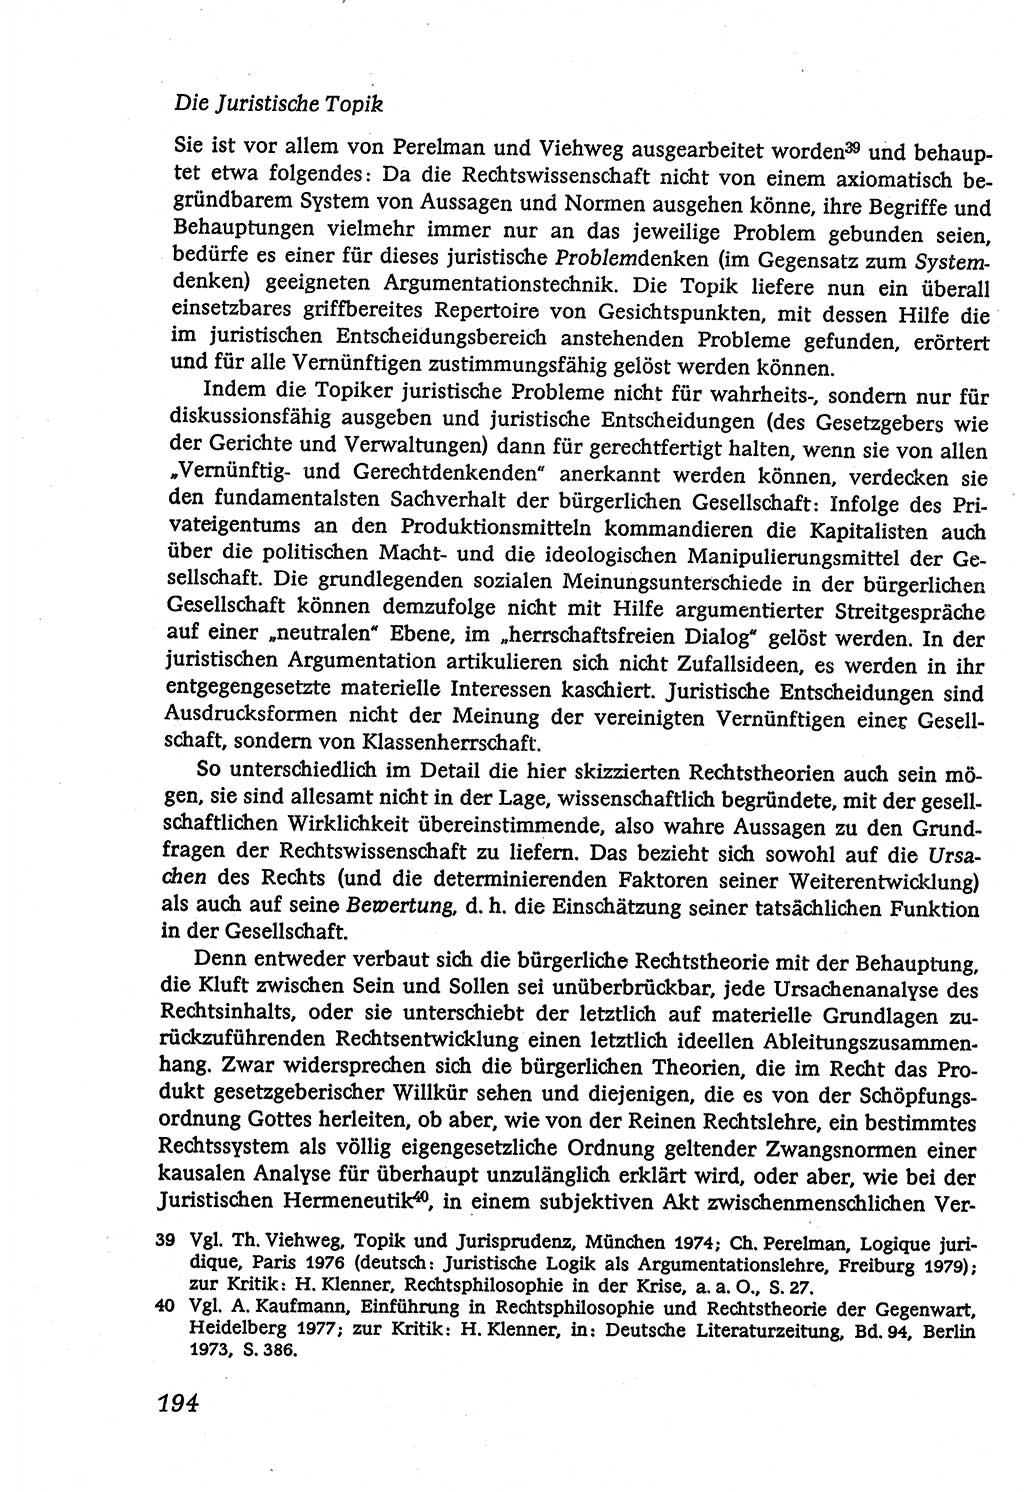 Marxistisch-leninistische (ML) Staats- und Rechtstheorie [Deutsche Demokratische Republik (DDR)], Lehrbuch 1980, Seite 194 (ML St.-R.-Th. DDR Lb. 1980, S. 194)